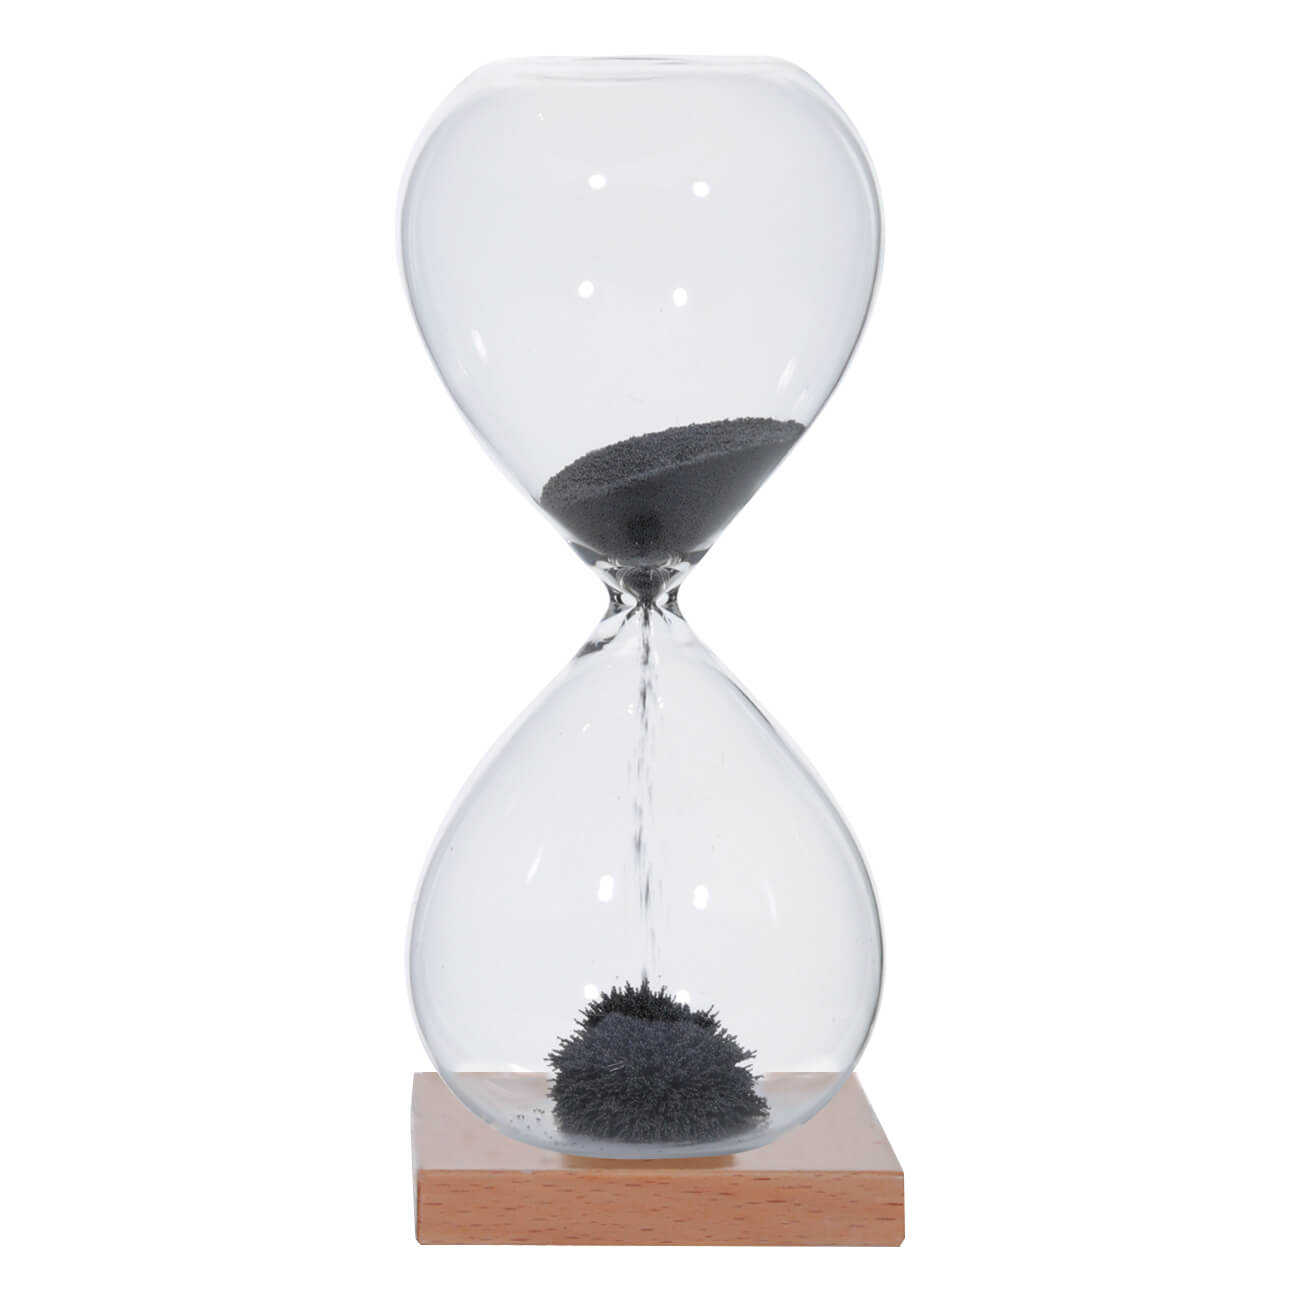 Часы песочные, 16 см, 1 минута, магнитные, на подставке, стекло/дерево, серые, Sand time изображение № 1